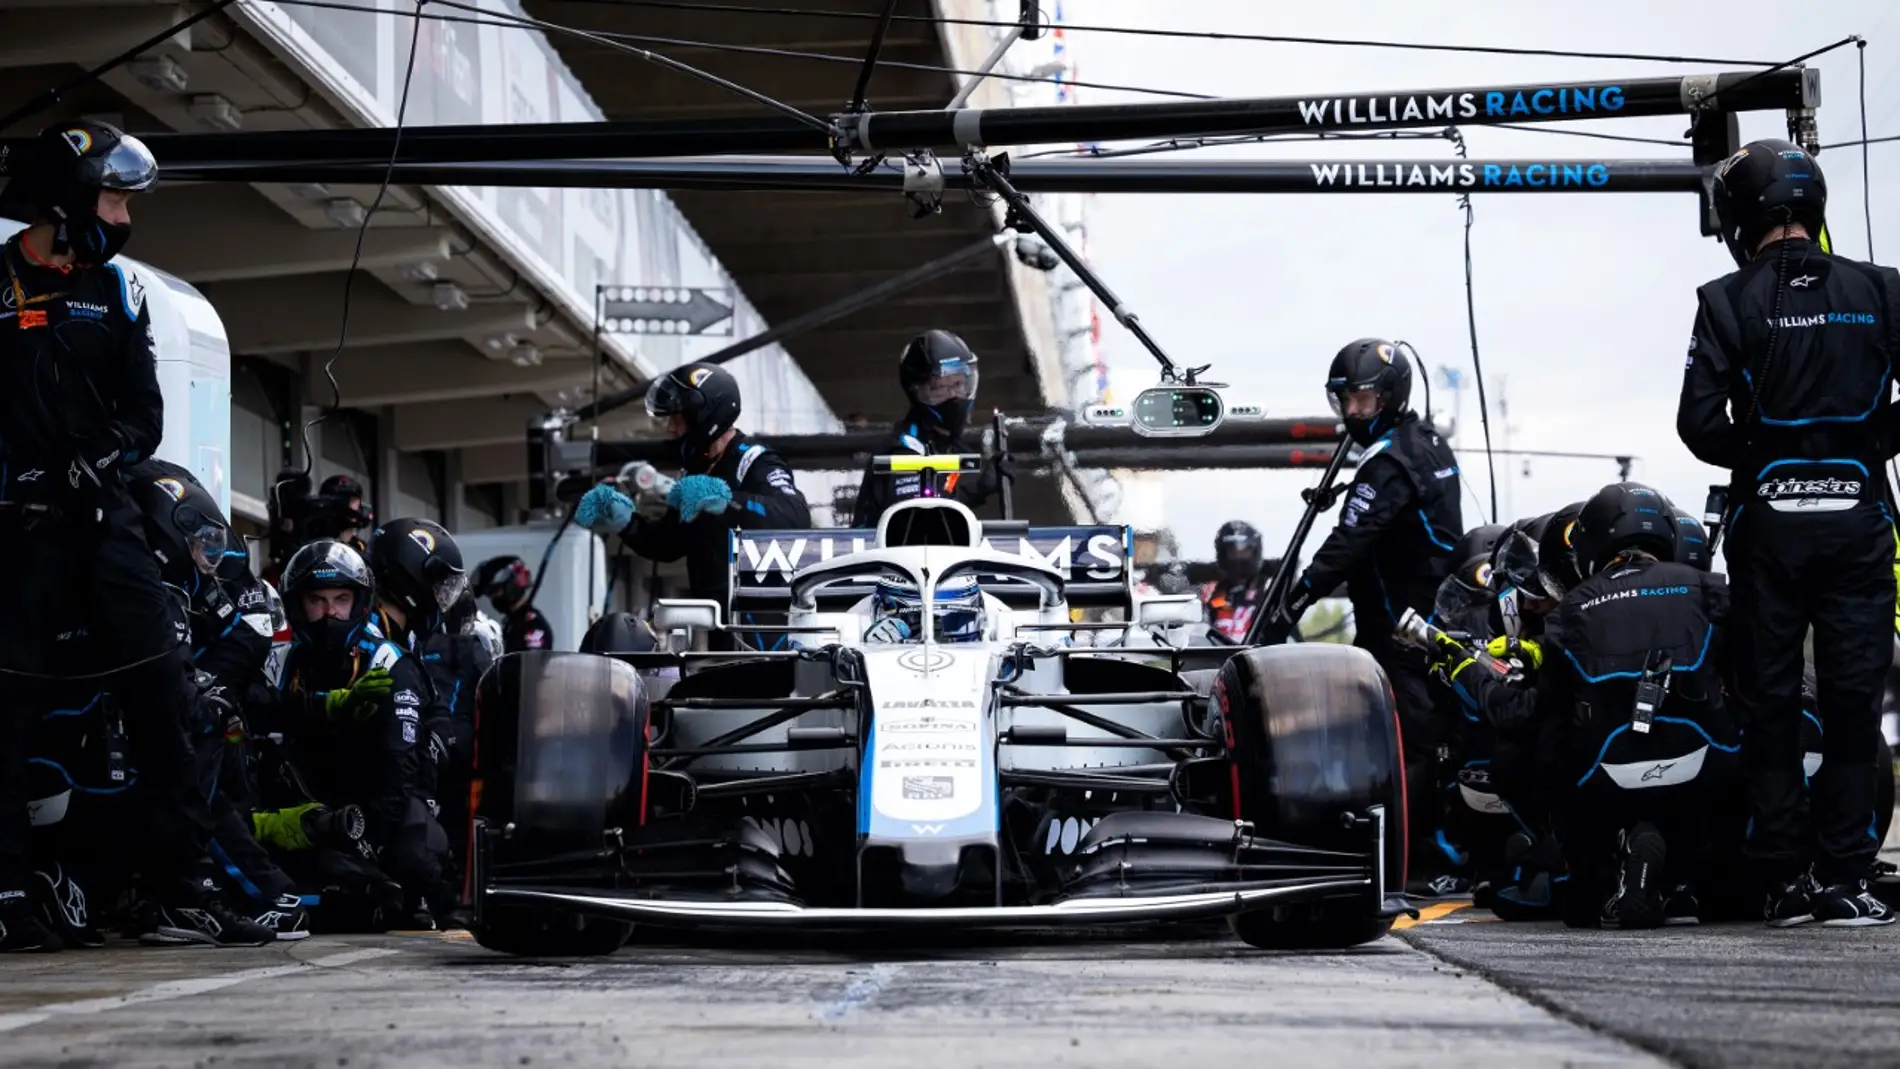 Williams Racing confirma su venta